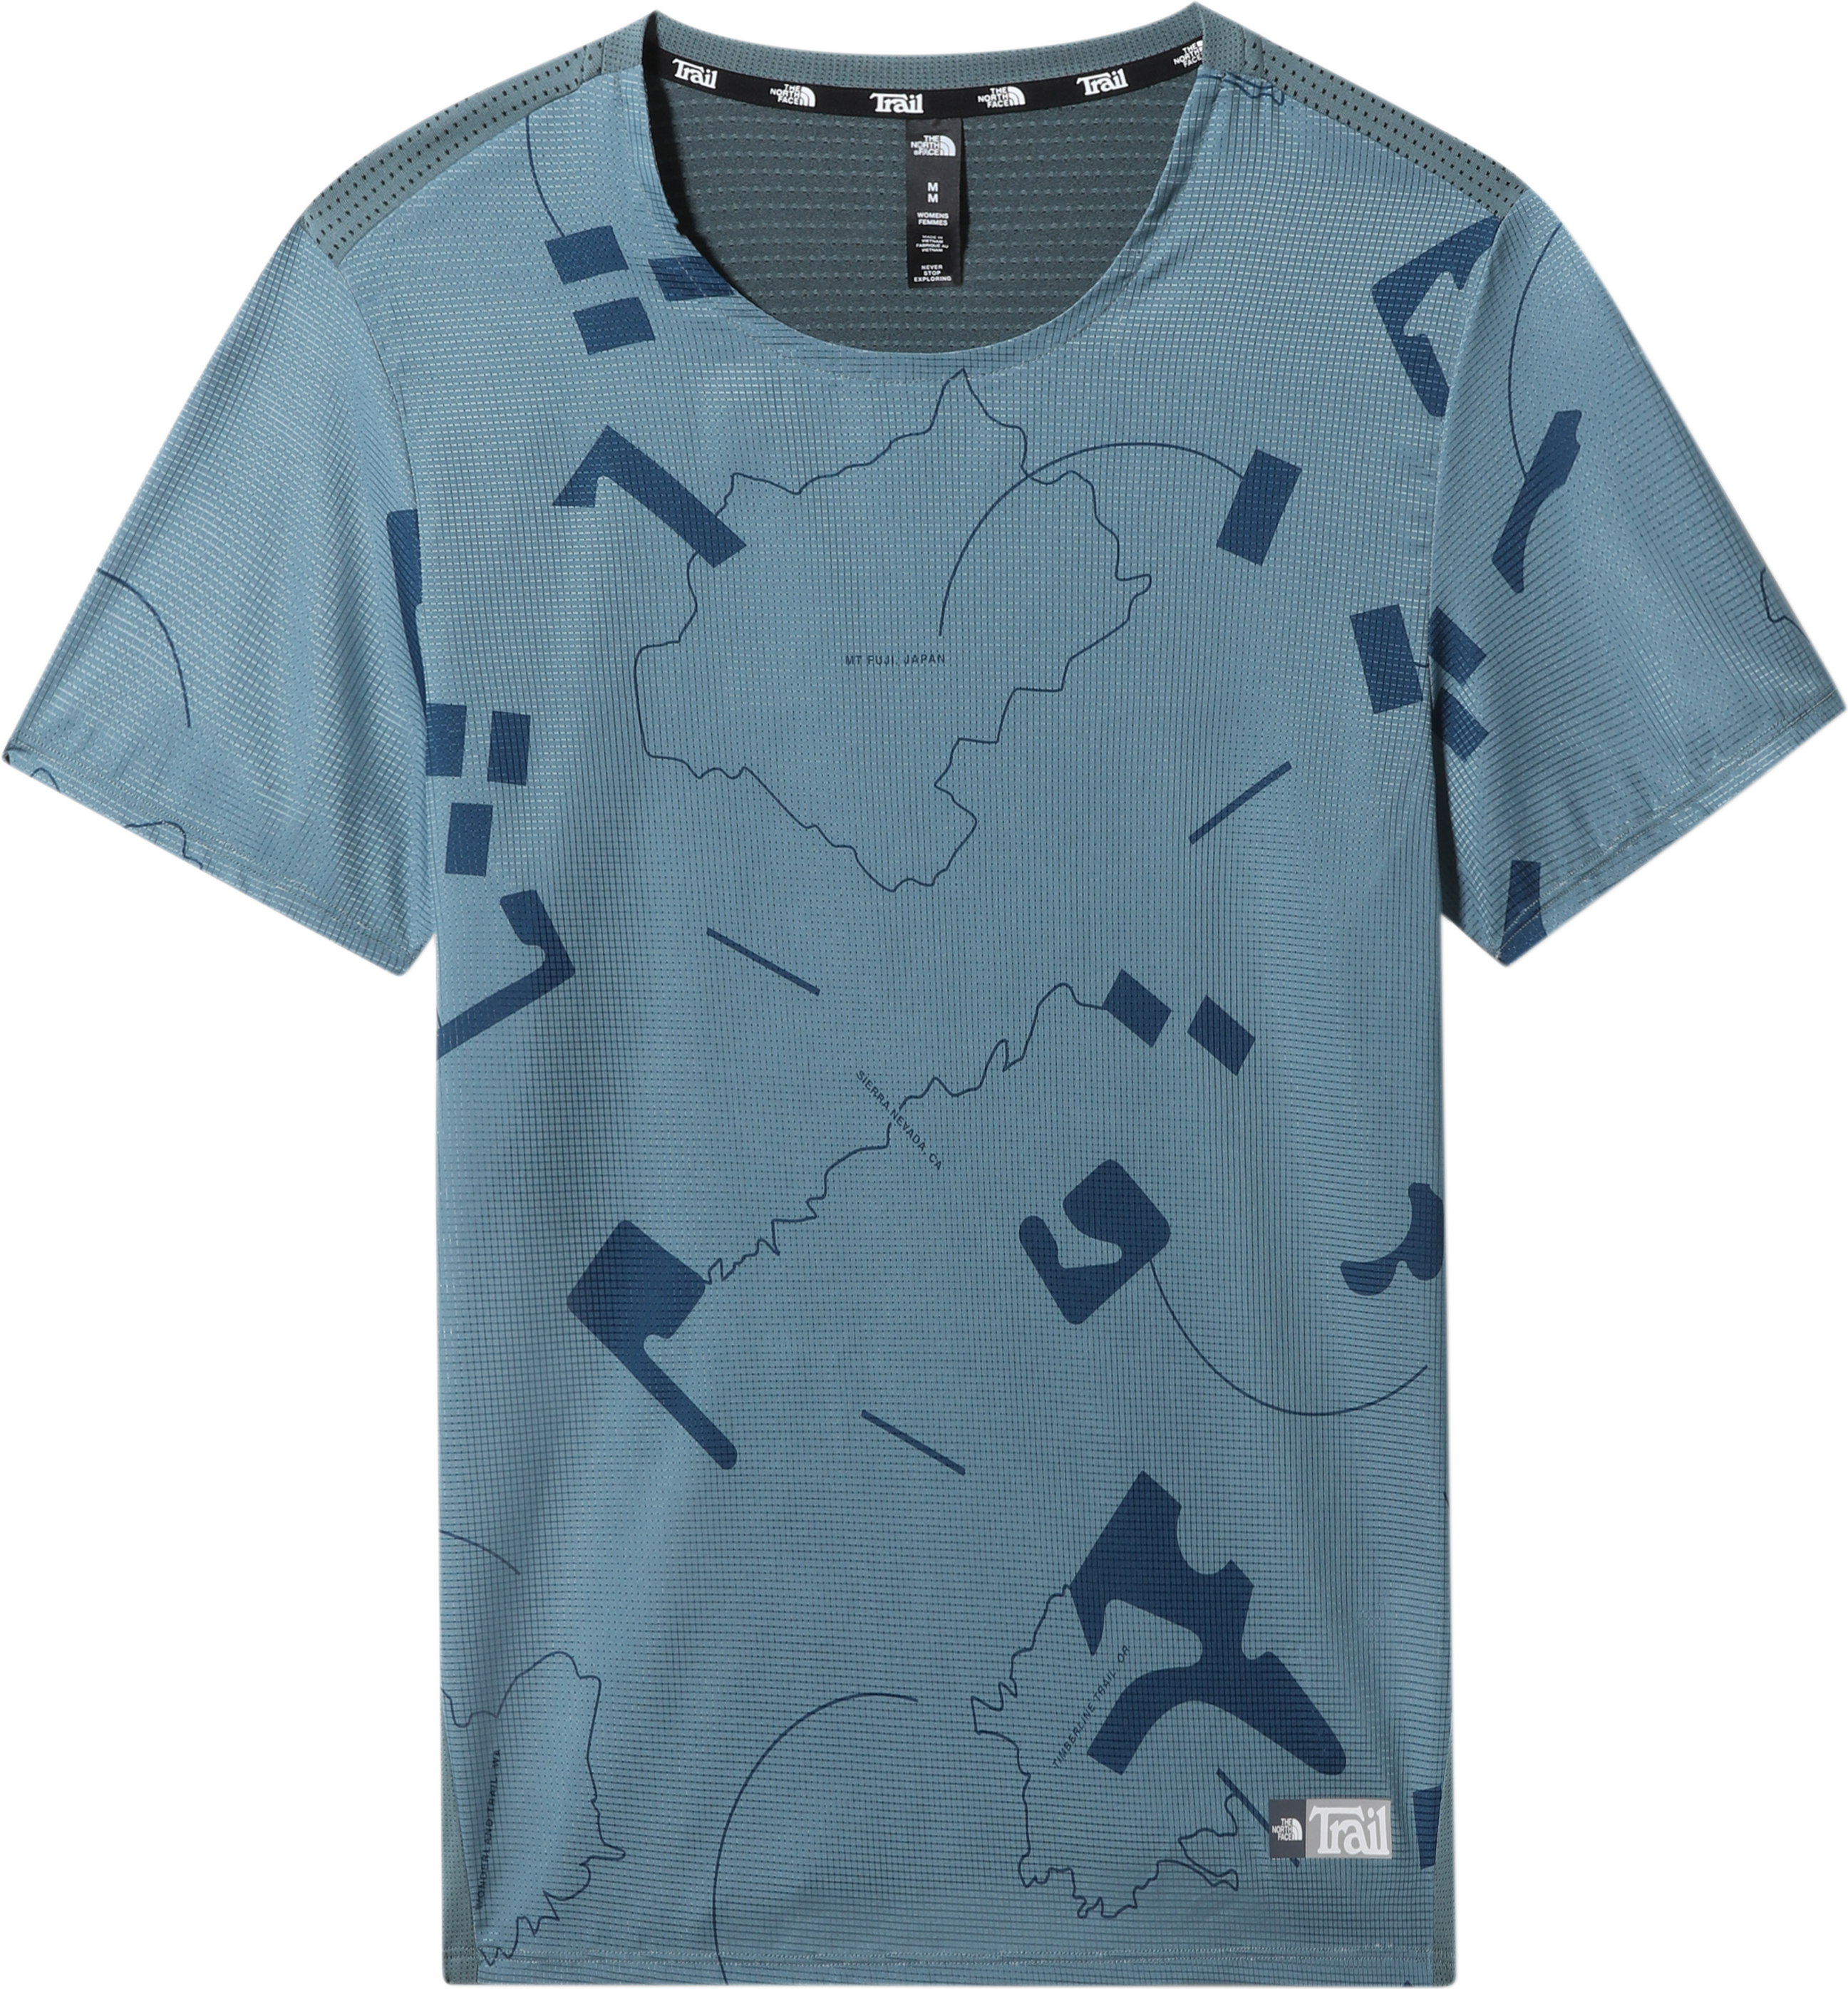 Men’s Printed Sunriser Short Sleeve Shirt Goblin Blue Trail Marker Print